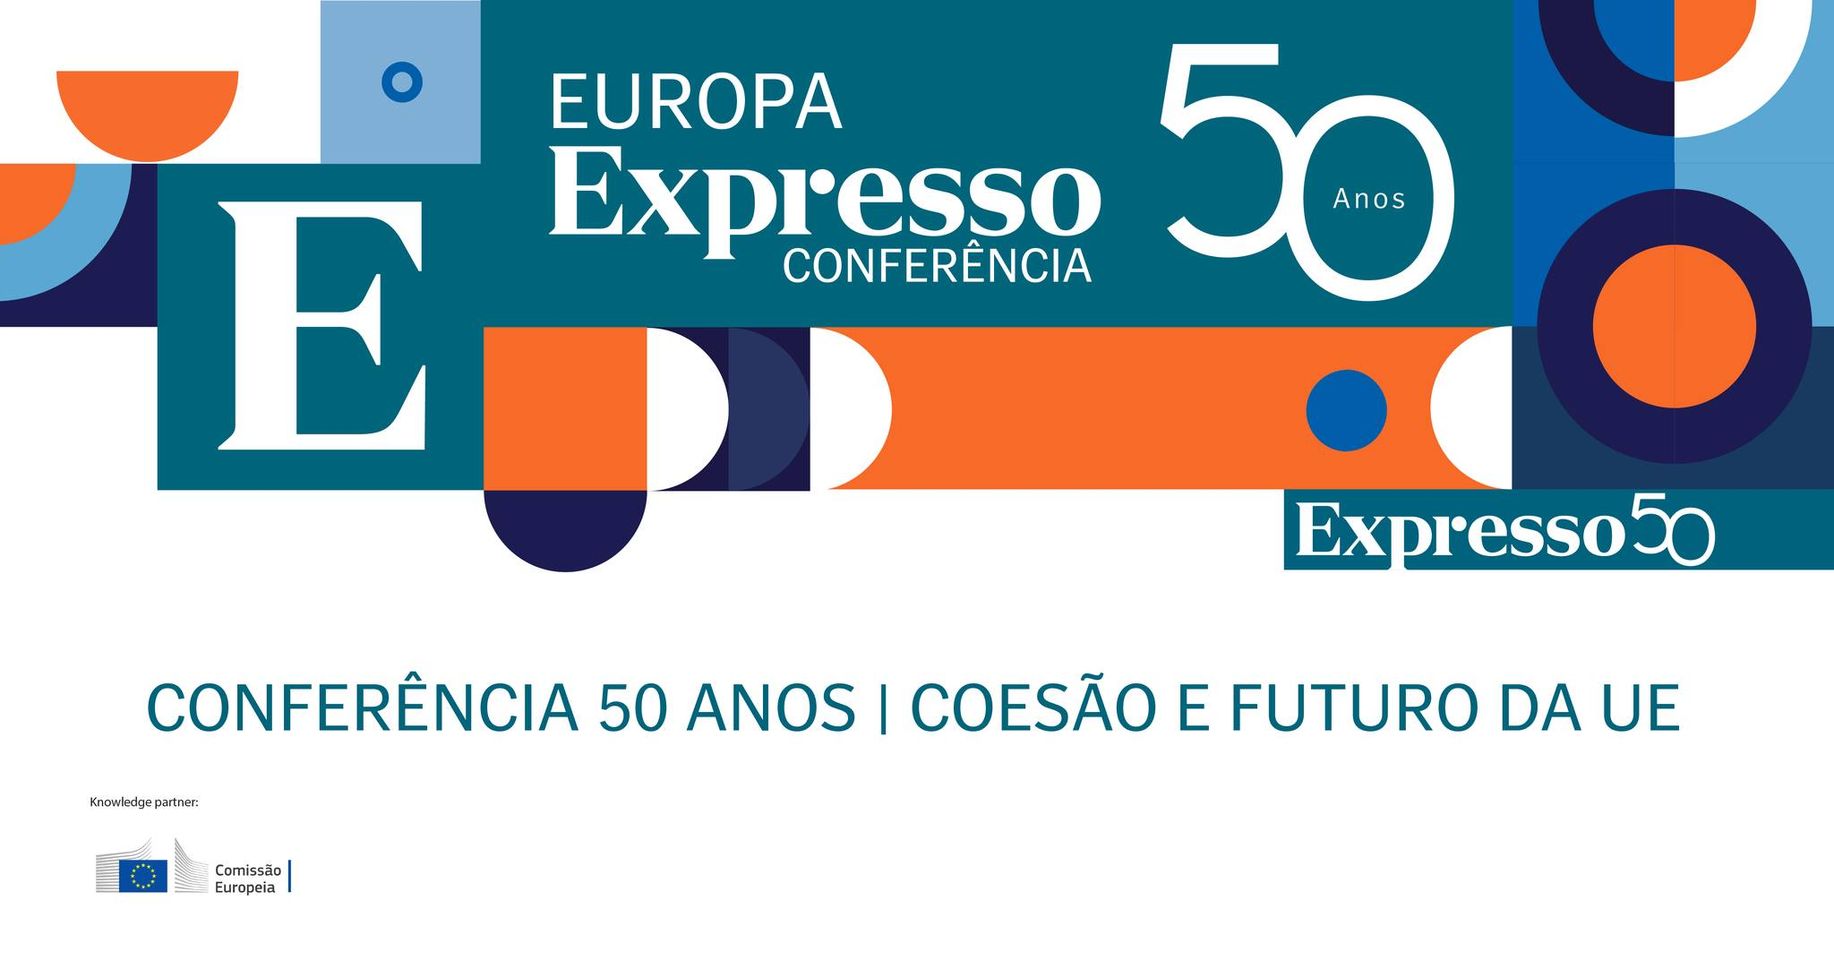 “Conferência 50 anos | Coesão e Futuro da UE”